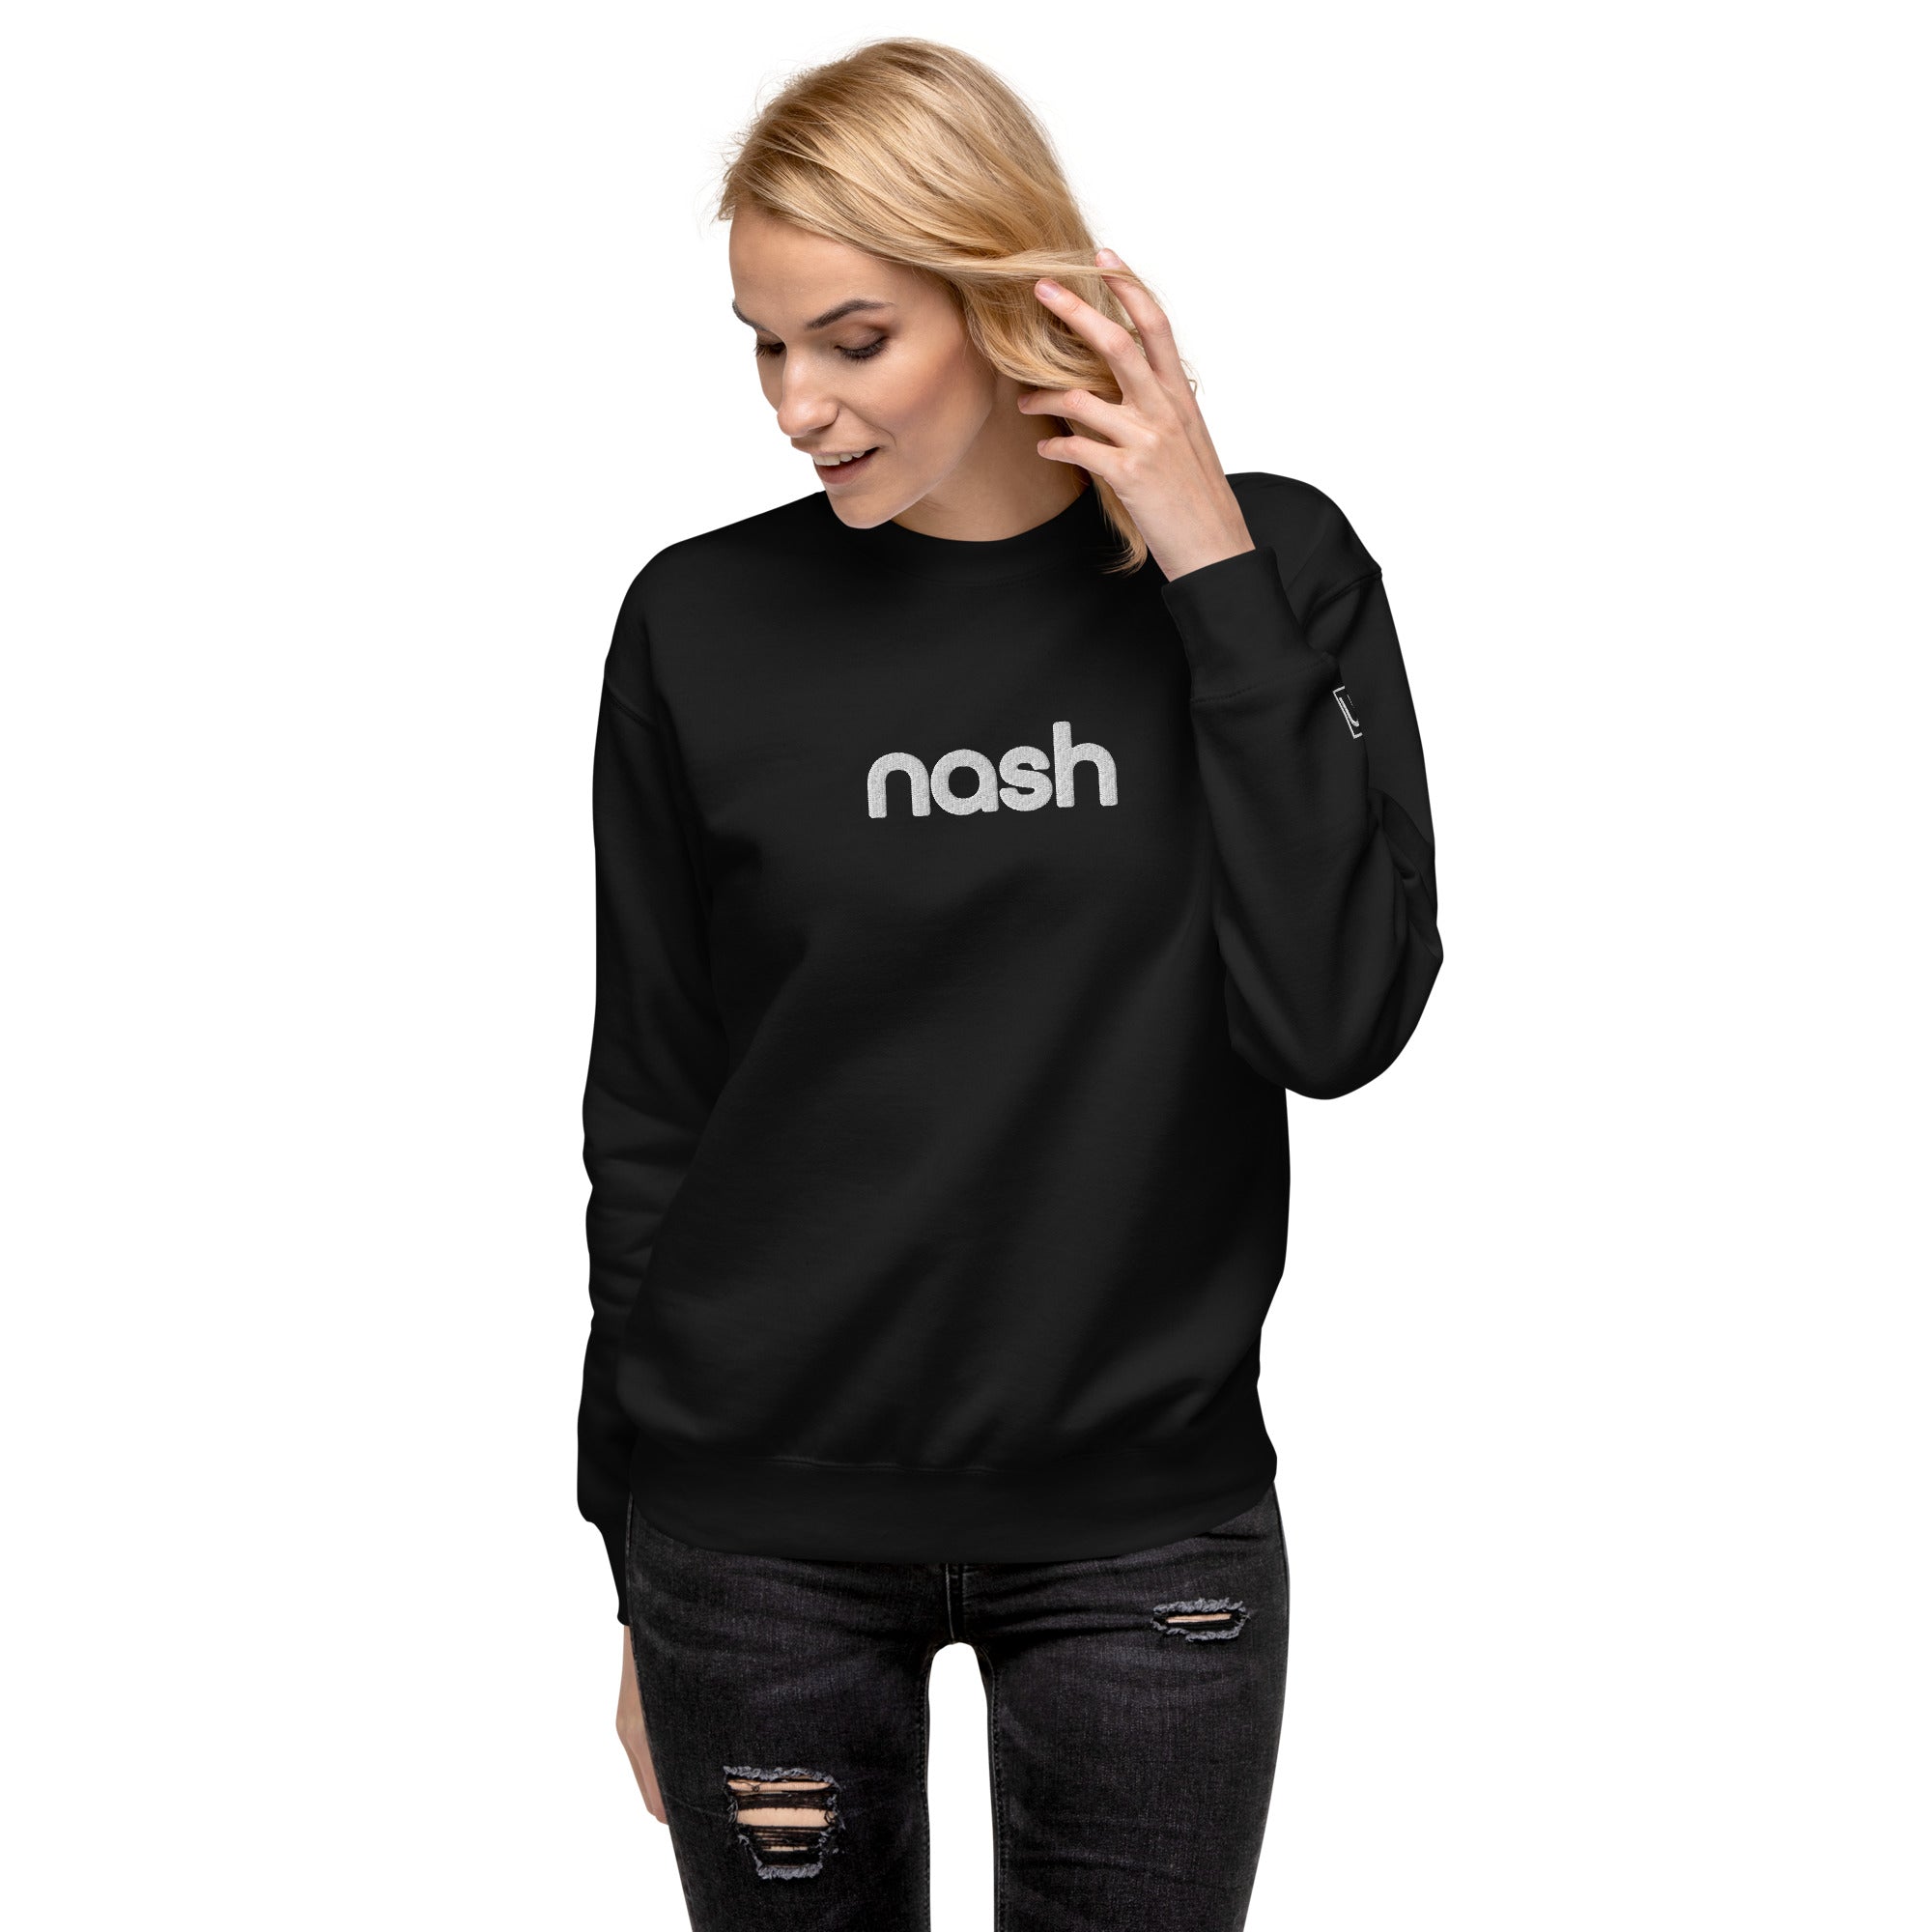 Nash Embroidered Unisex Premium Sweatshirt, Lower Center, Nash Apparel, Nash Collection